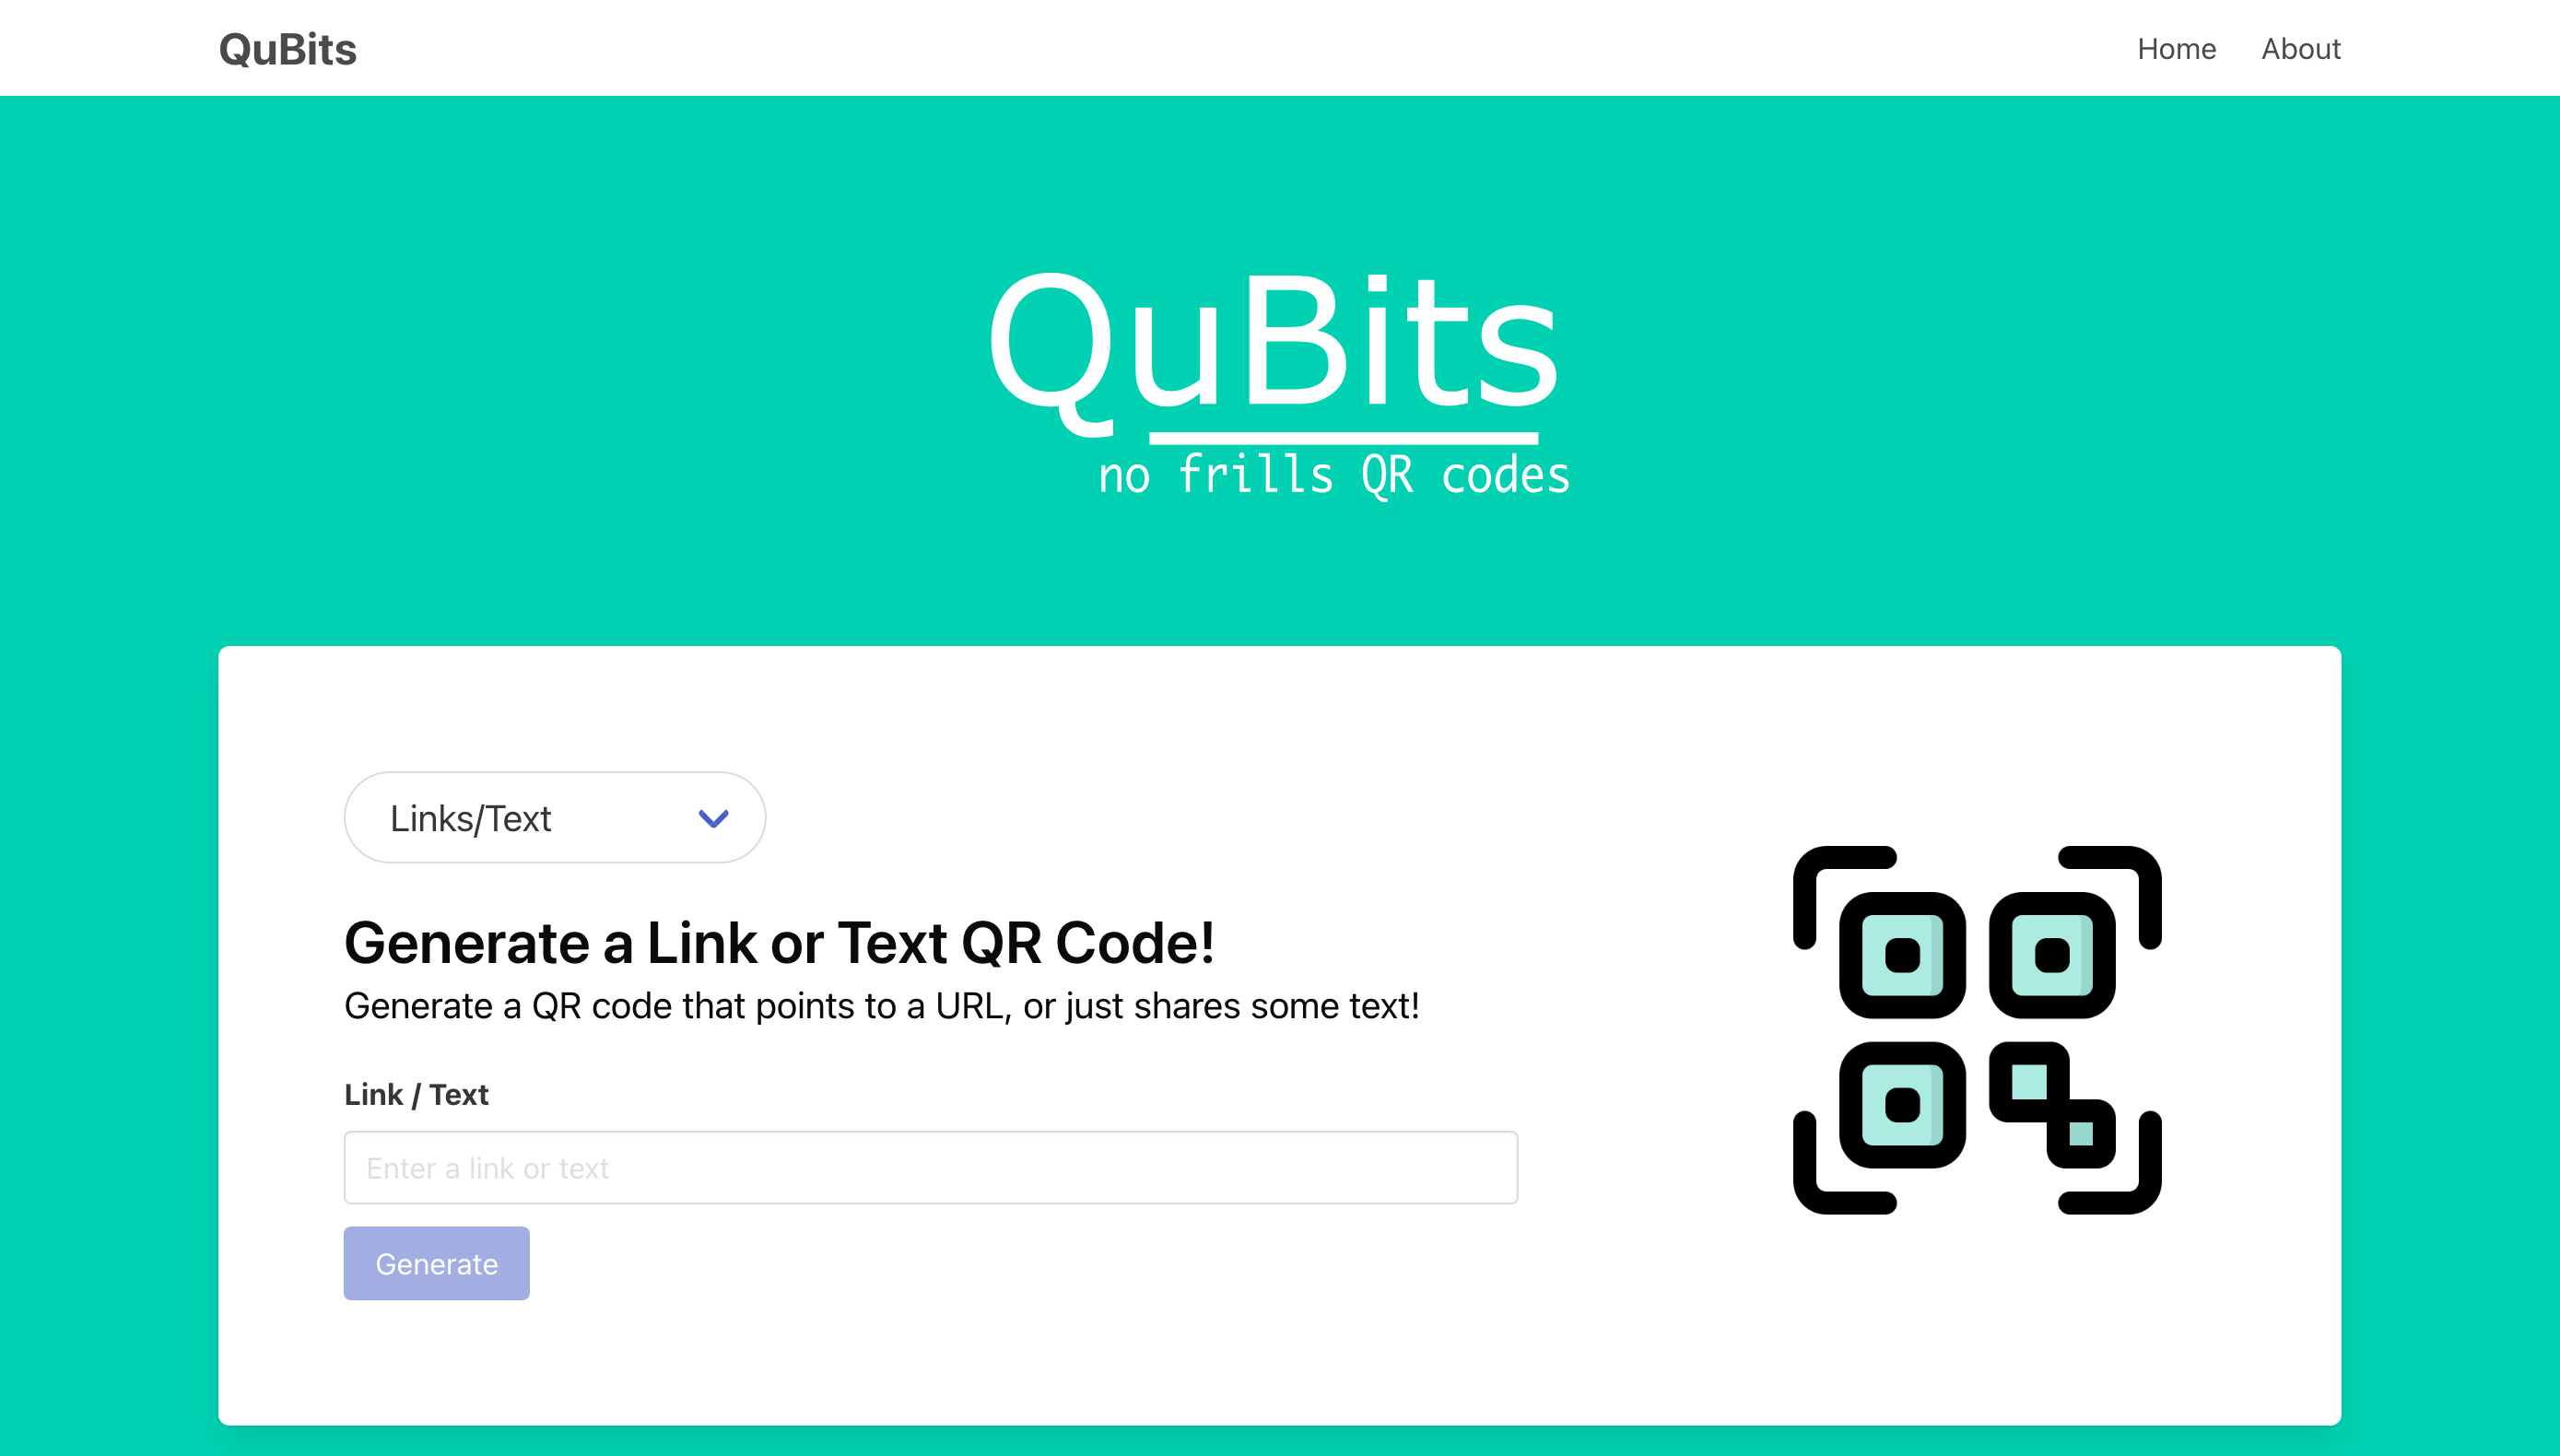 QuBits